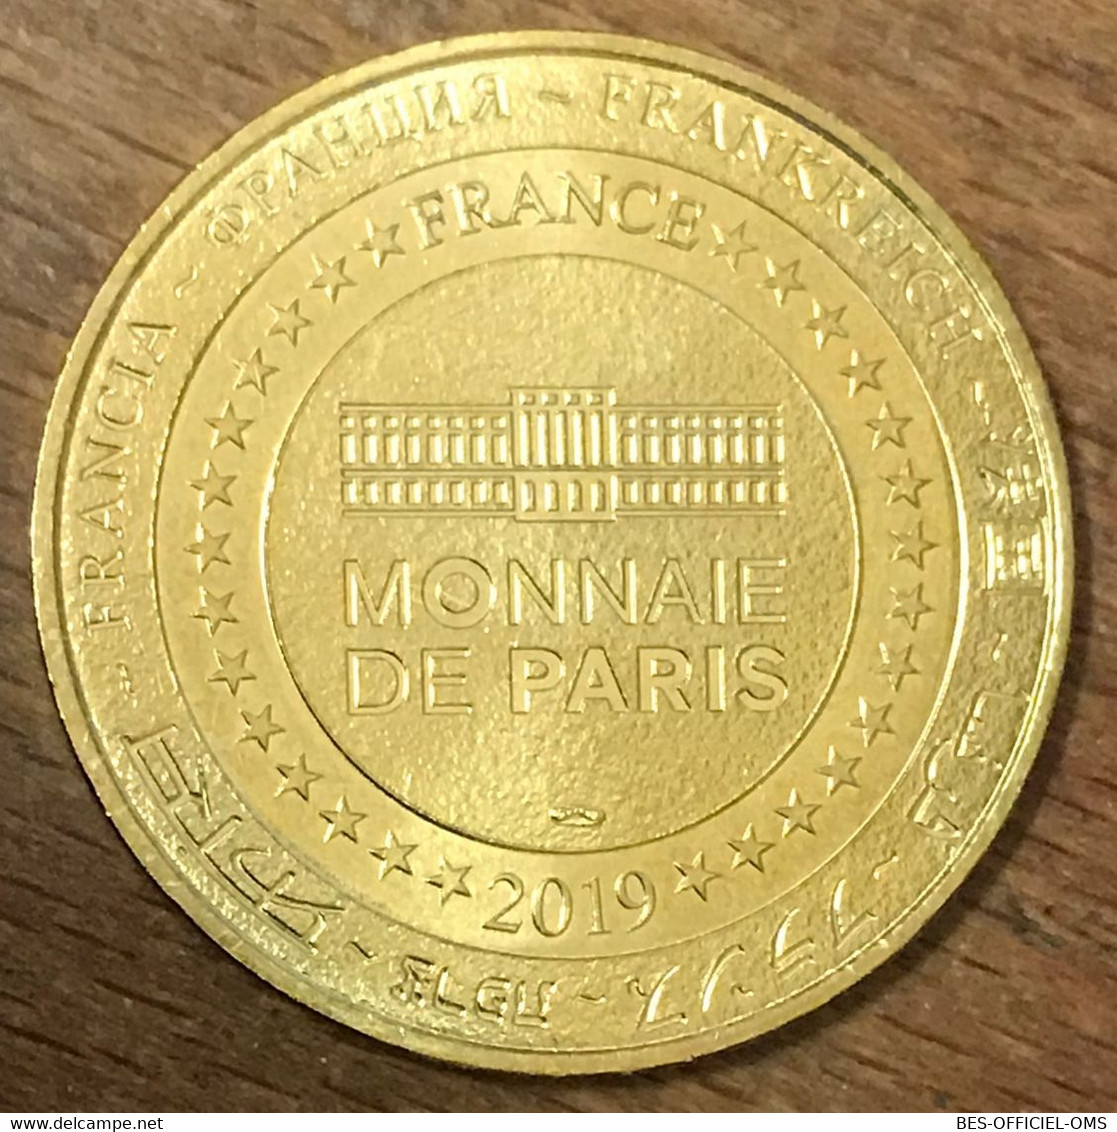 75016 AQUARIUM DE PARIS REQUIN MDP 2019 MÉDAILLE SOUVENIR MONNAIE DE PARIS JETON TOURISTIQUE TOKENS MEDALS COIN - 2019